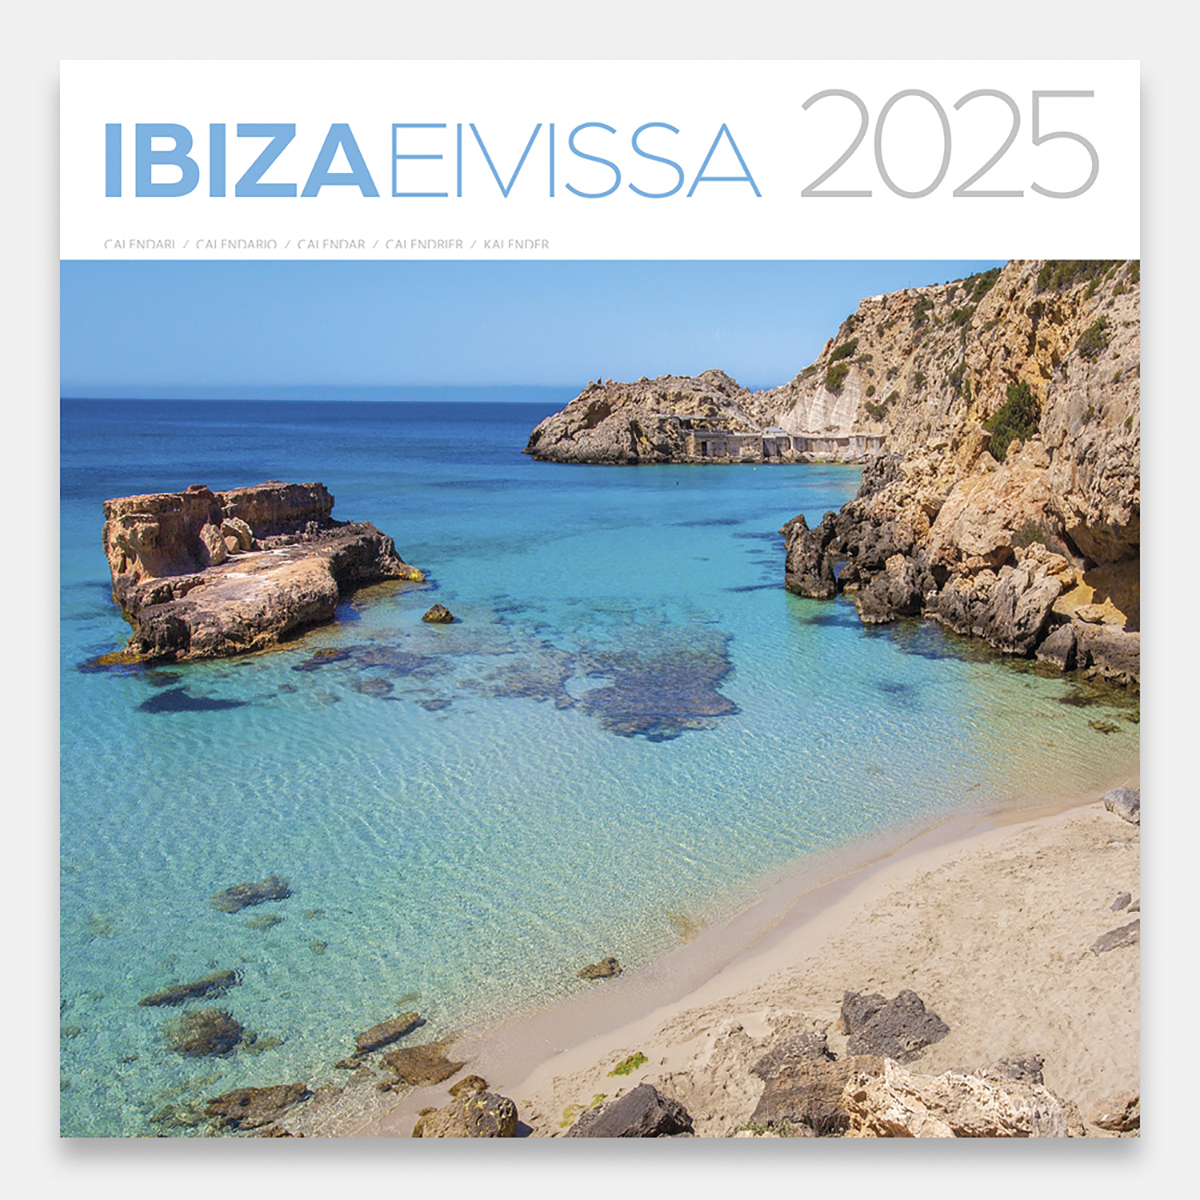 Calendar 2025 Ibiza 25eig calendario pared 2025 ibiza eivissa